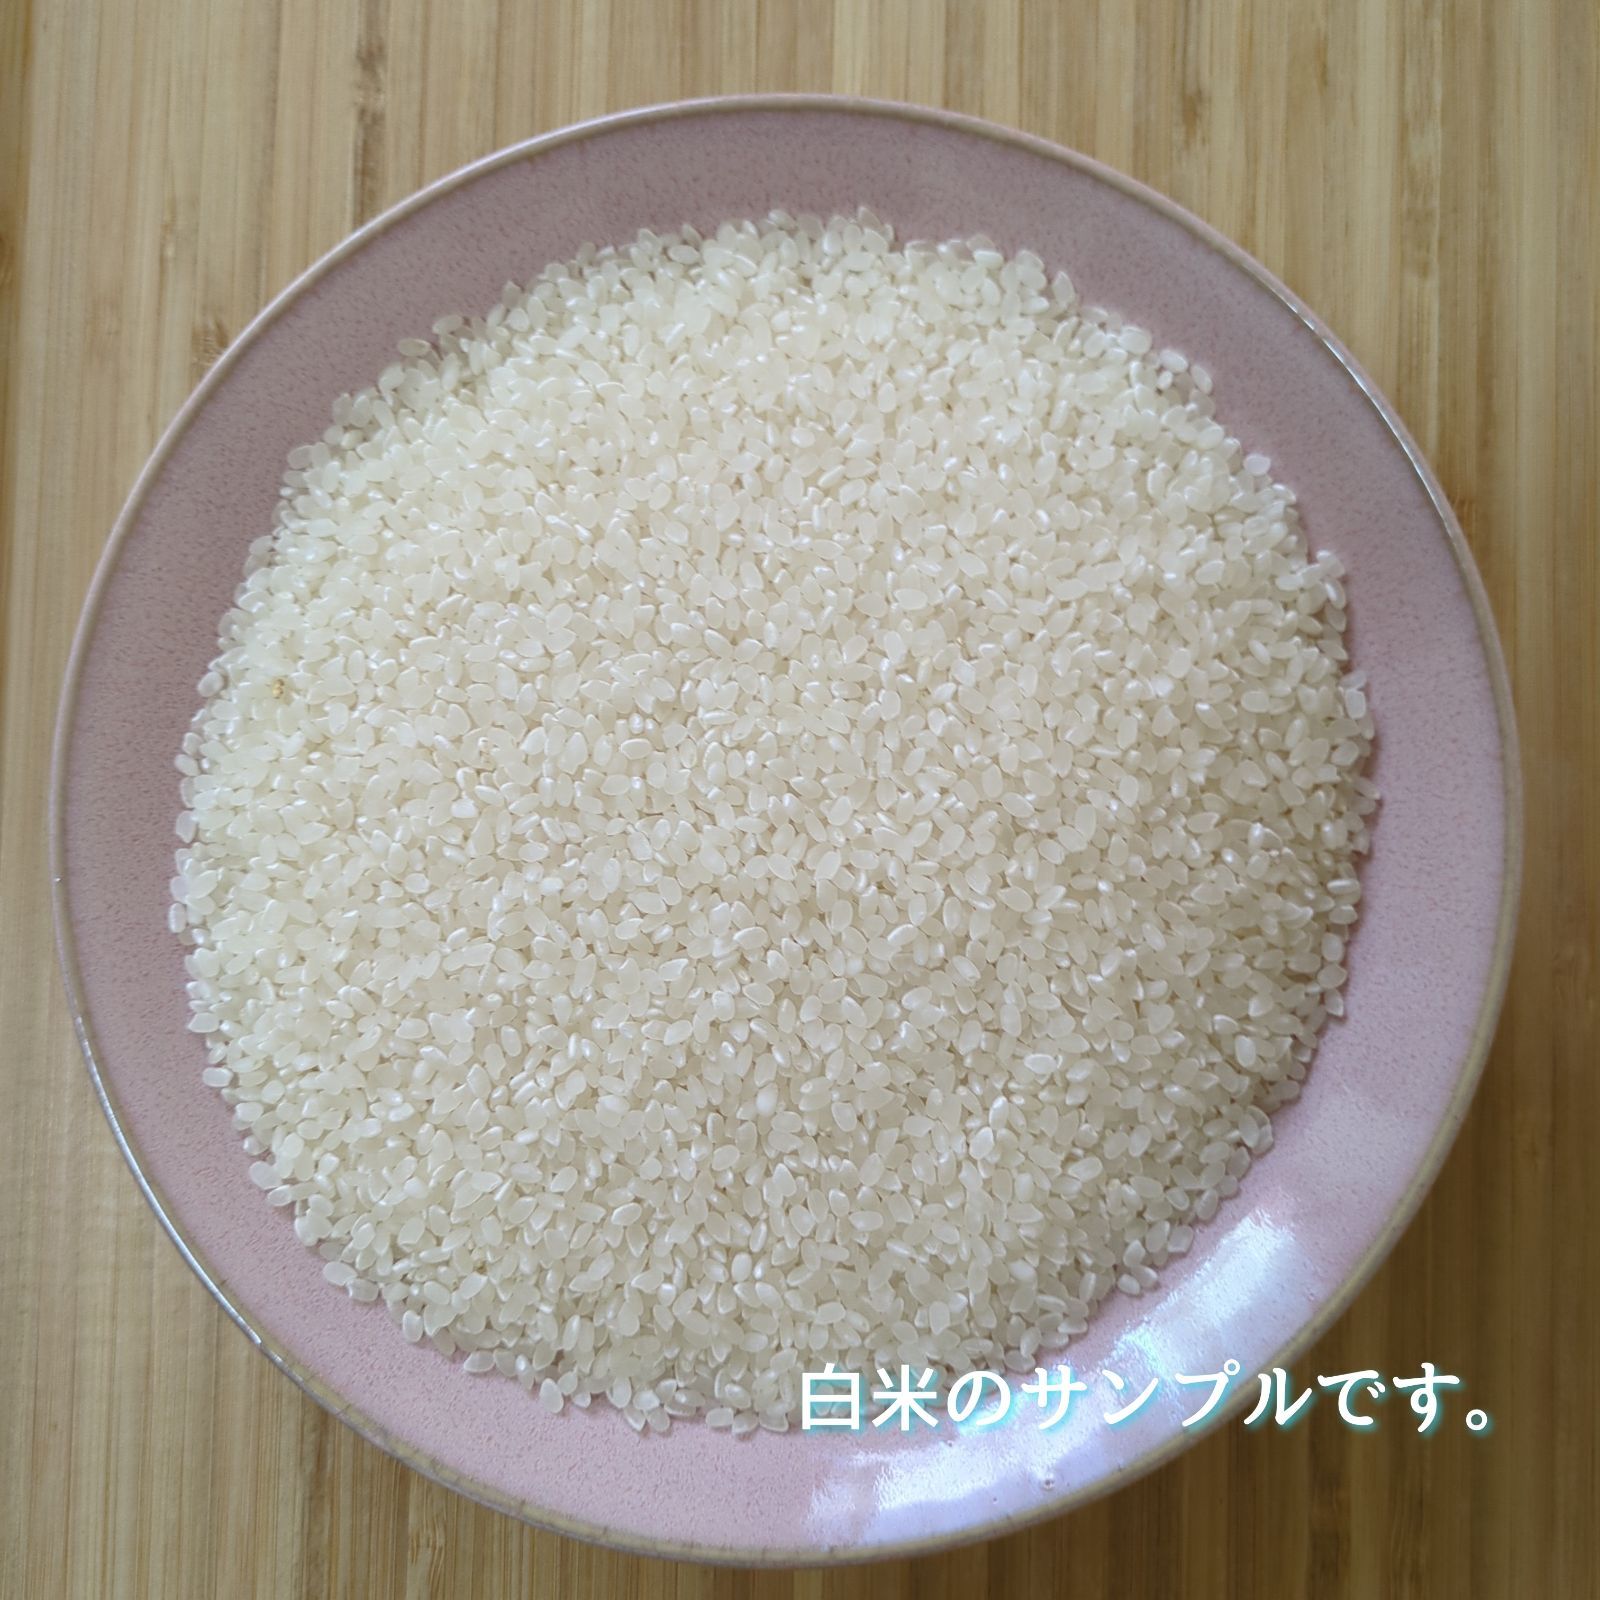 令和5年産三重県伊賀市産コシヒカリ20㎏10㎏×2無洗米( 送料精米料消費税込)